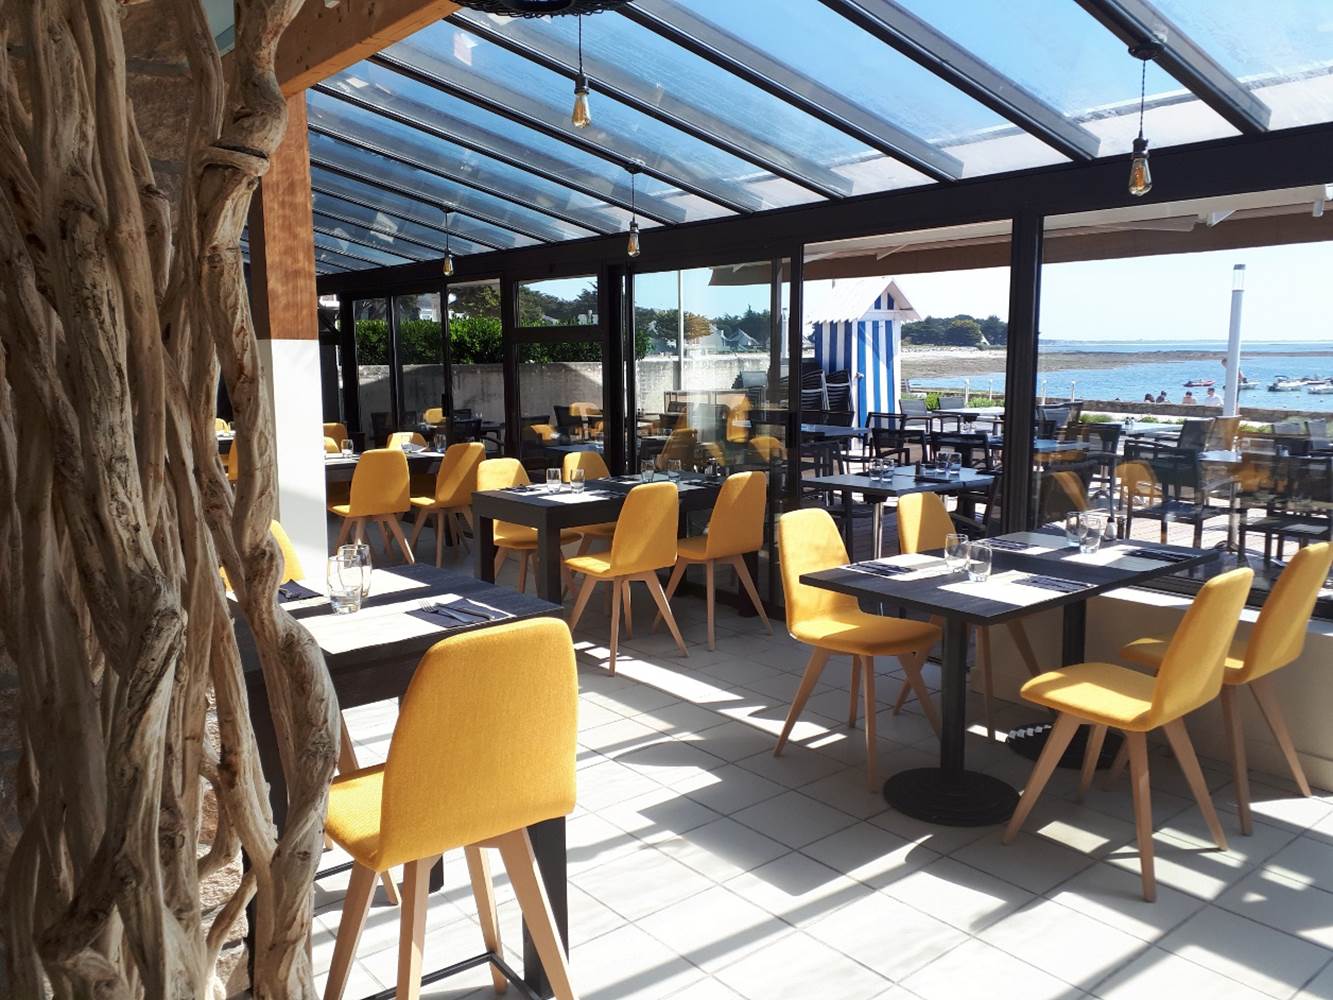 Salle de restaurant principale avec vue panoramique sur le port © Hôtel du Port